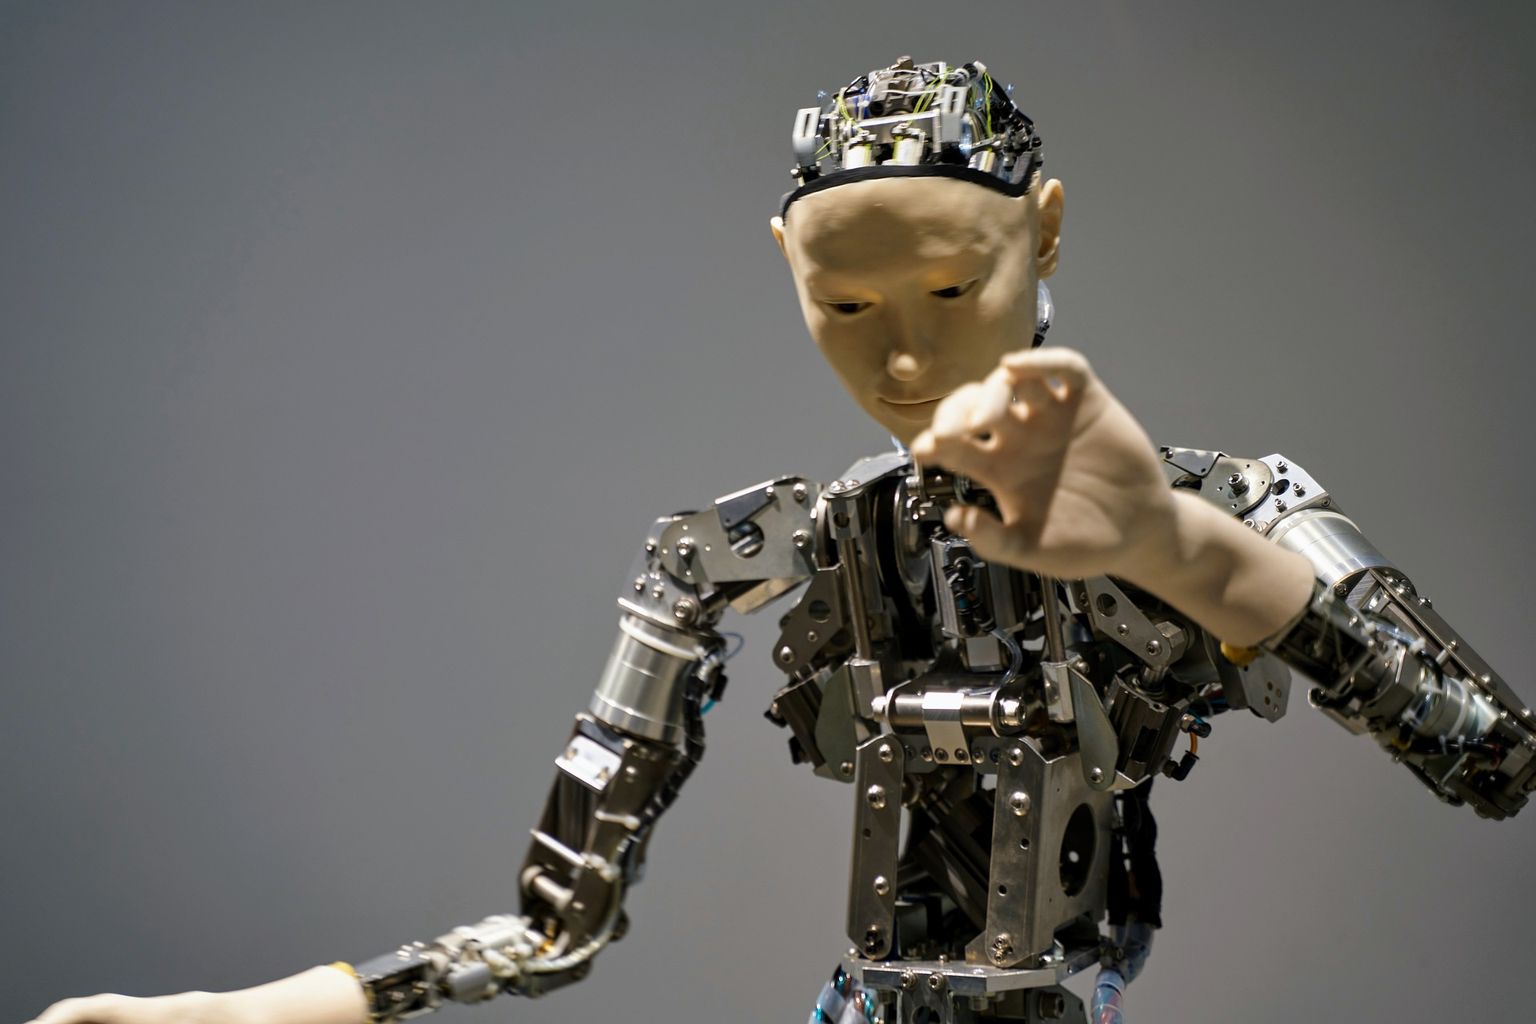 Robot vajab und nagu inimene, avastasid Tšehhi teadlased.